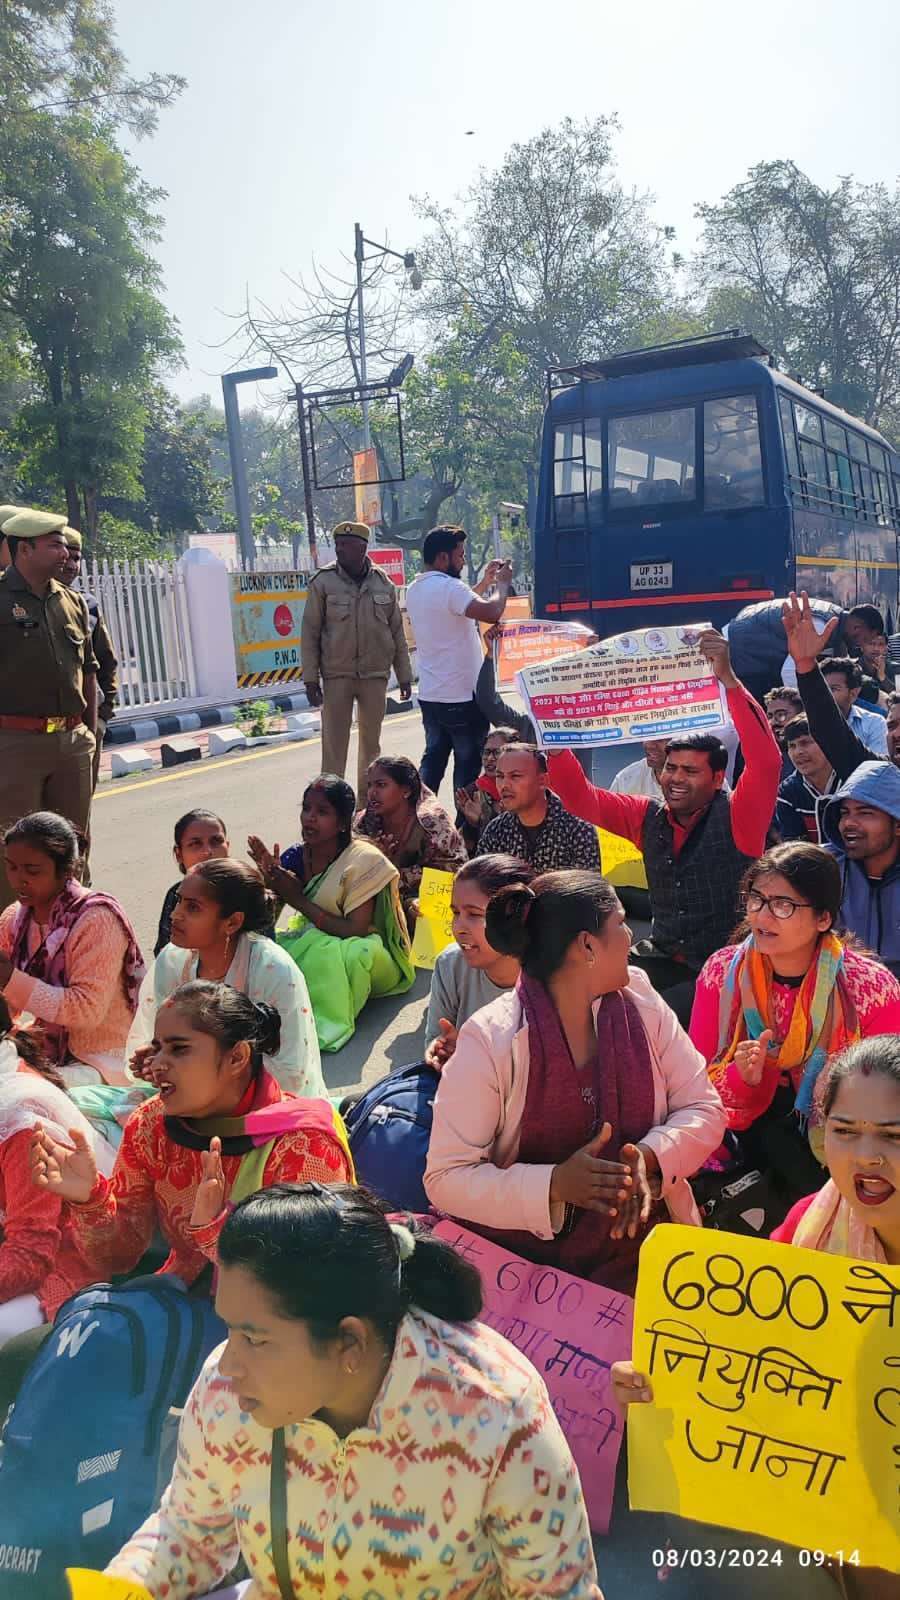 Photo: 68000 शिक्षक भर्ती कैंडिडेट्स का केशव प्रसाद मौर्या के घर हल्ला बोल, जमकर
प्रदर्शन जारी